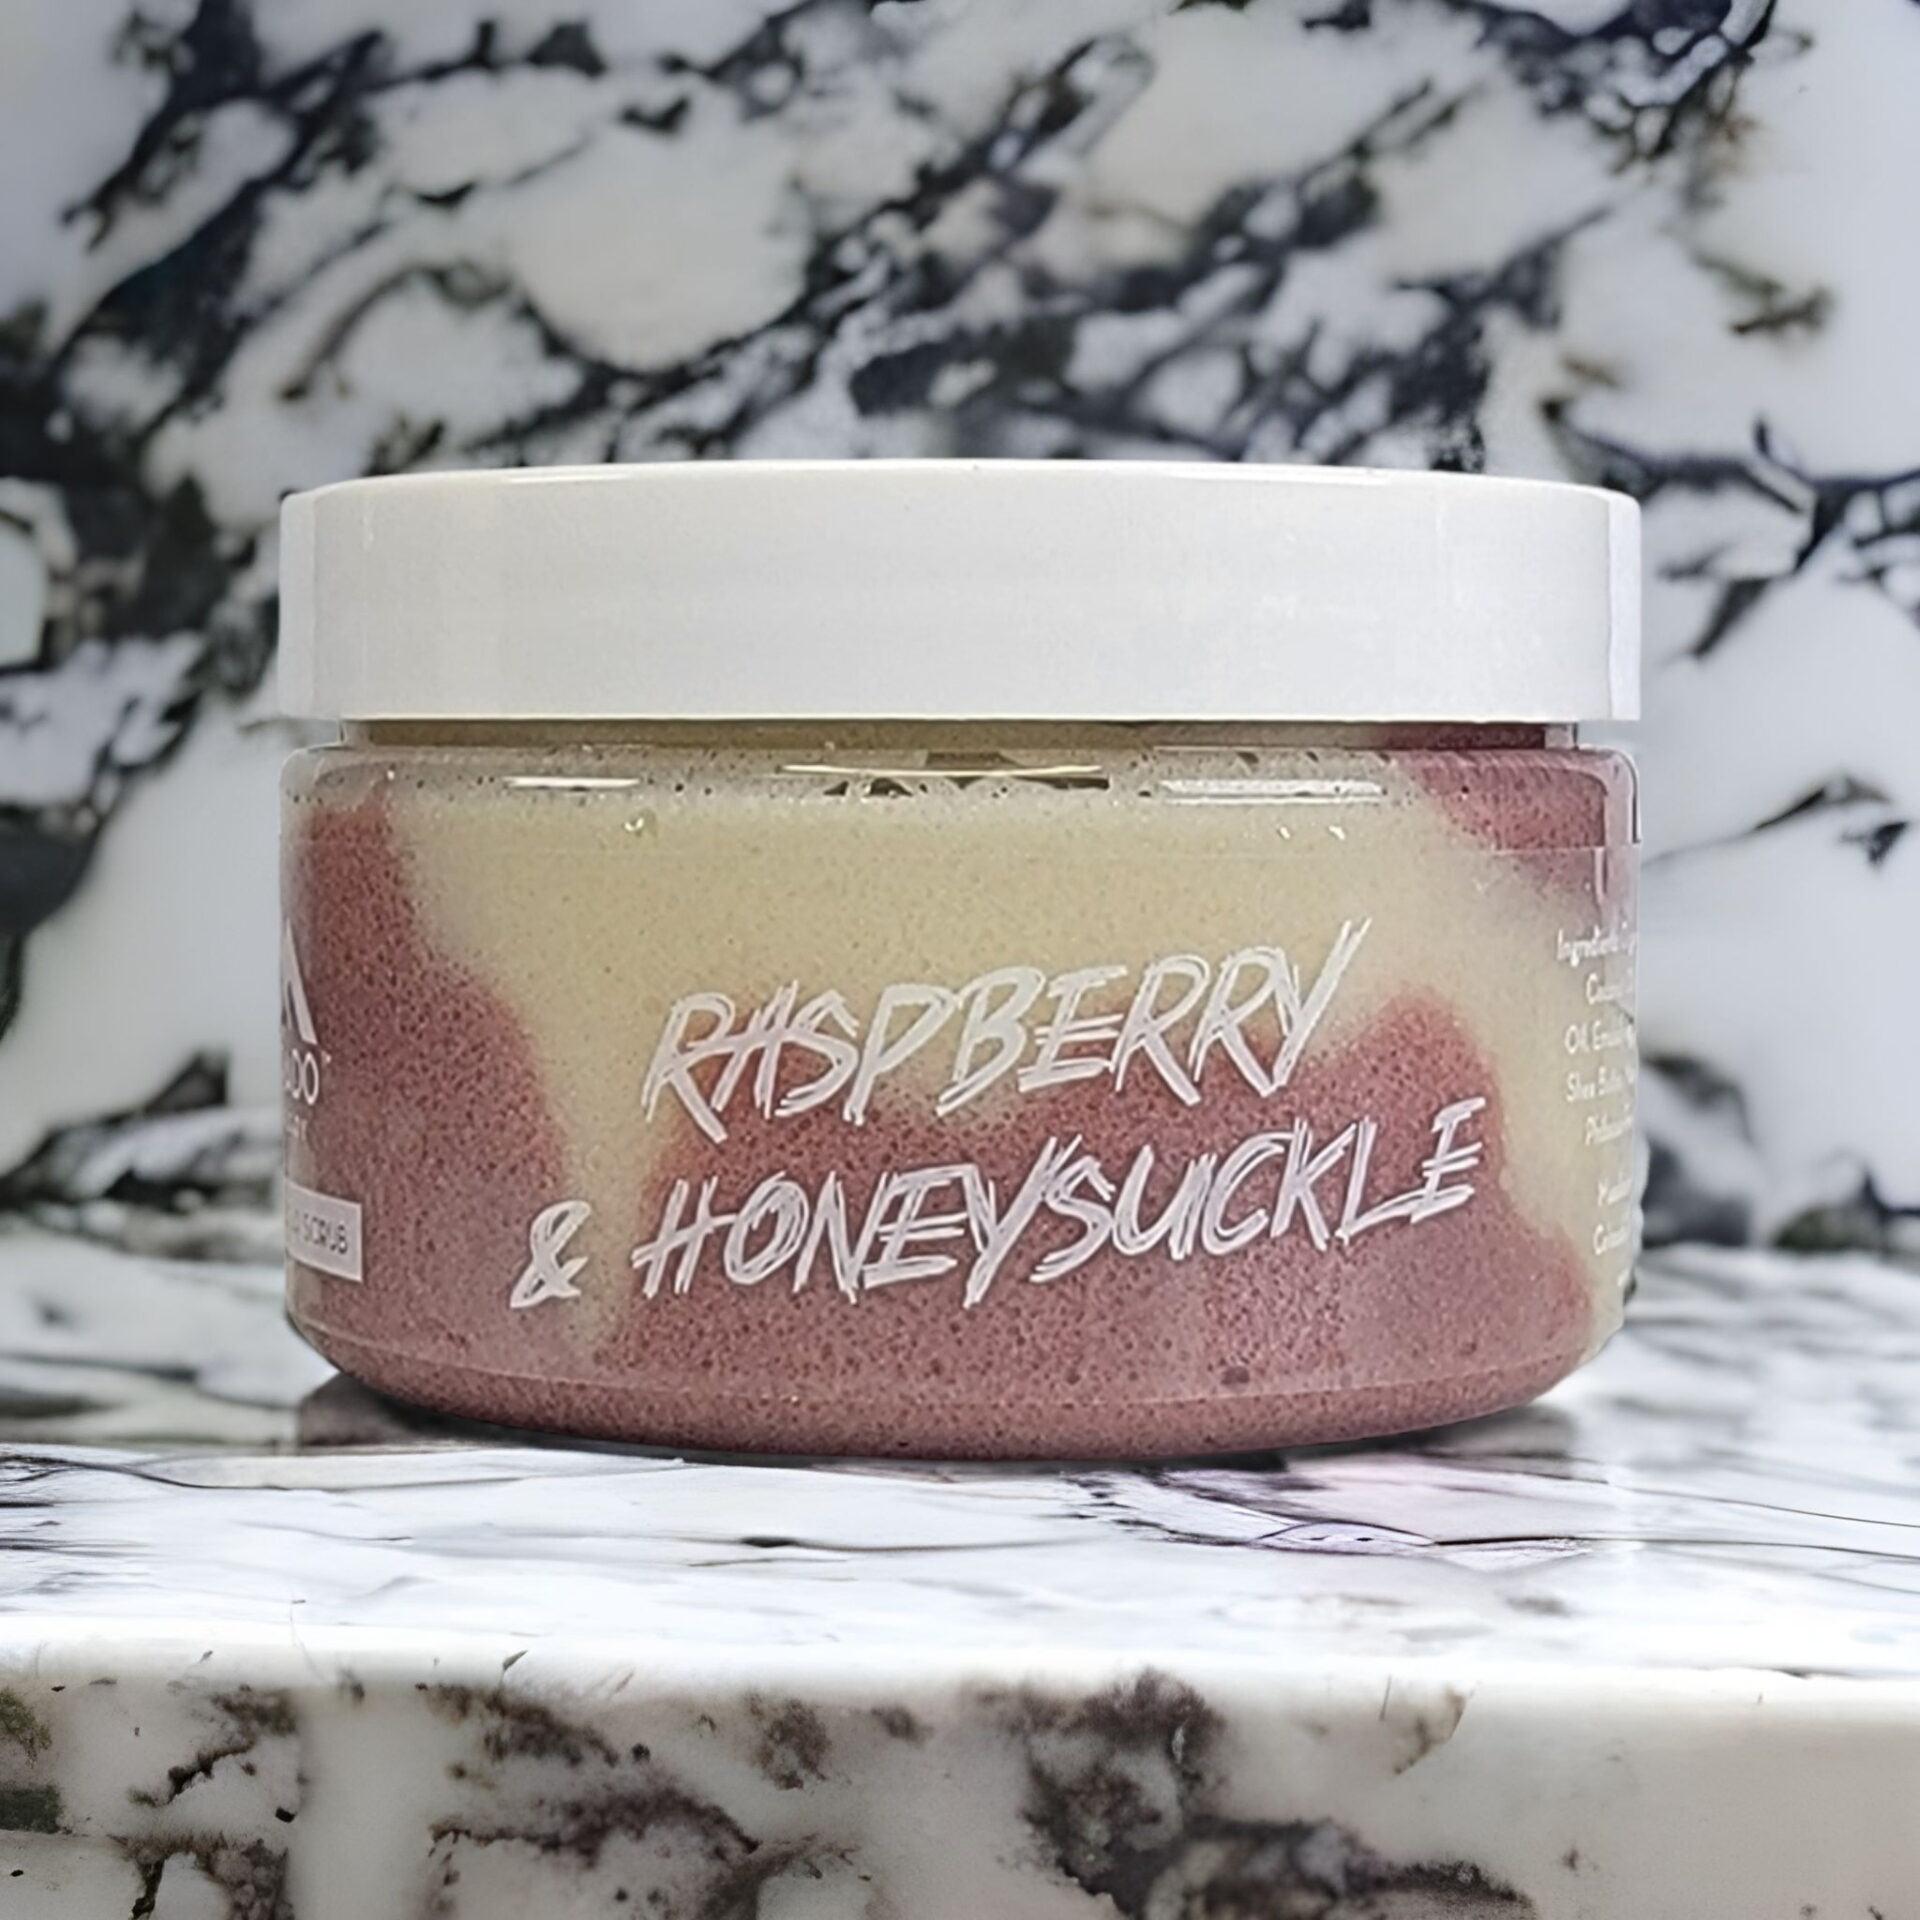 Raspberry & Honeysuckle Sugar Scrub